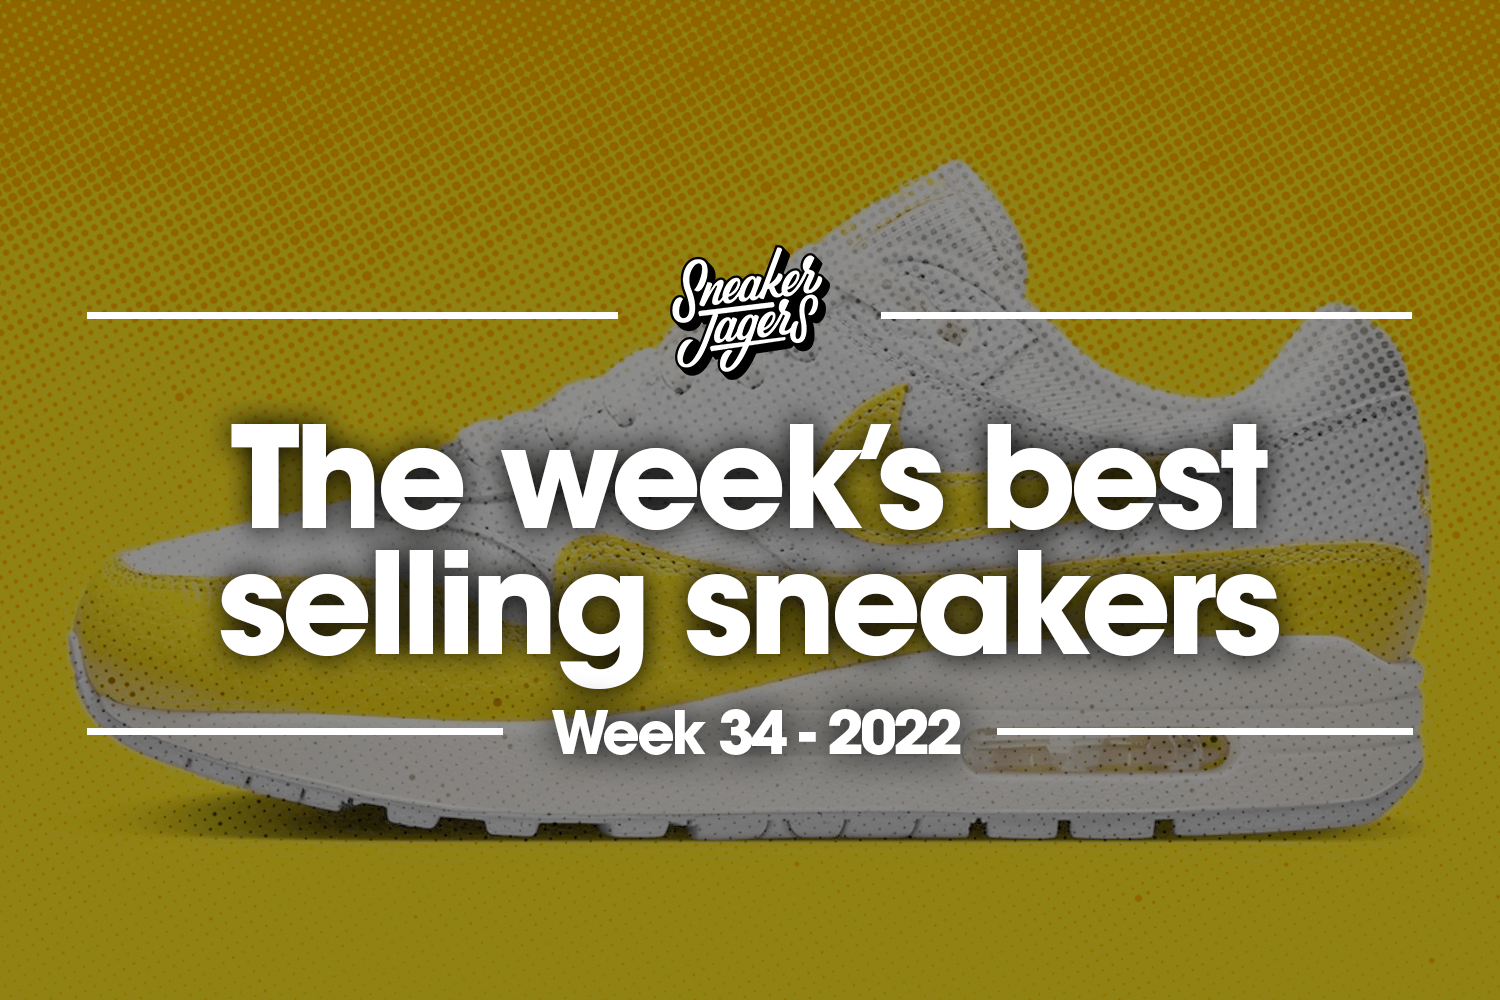 The 5 best-selling sneakers of week 34